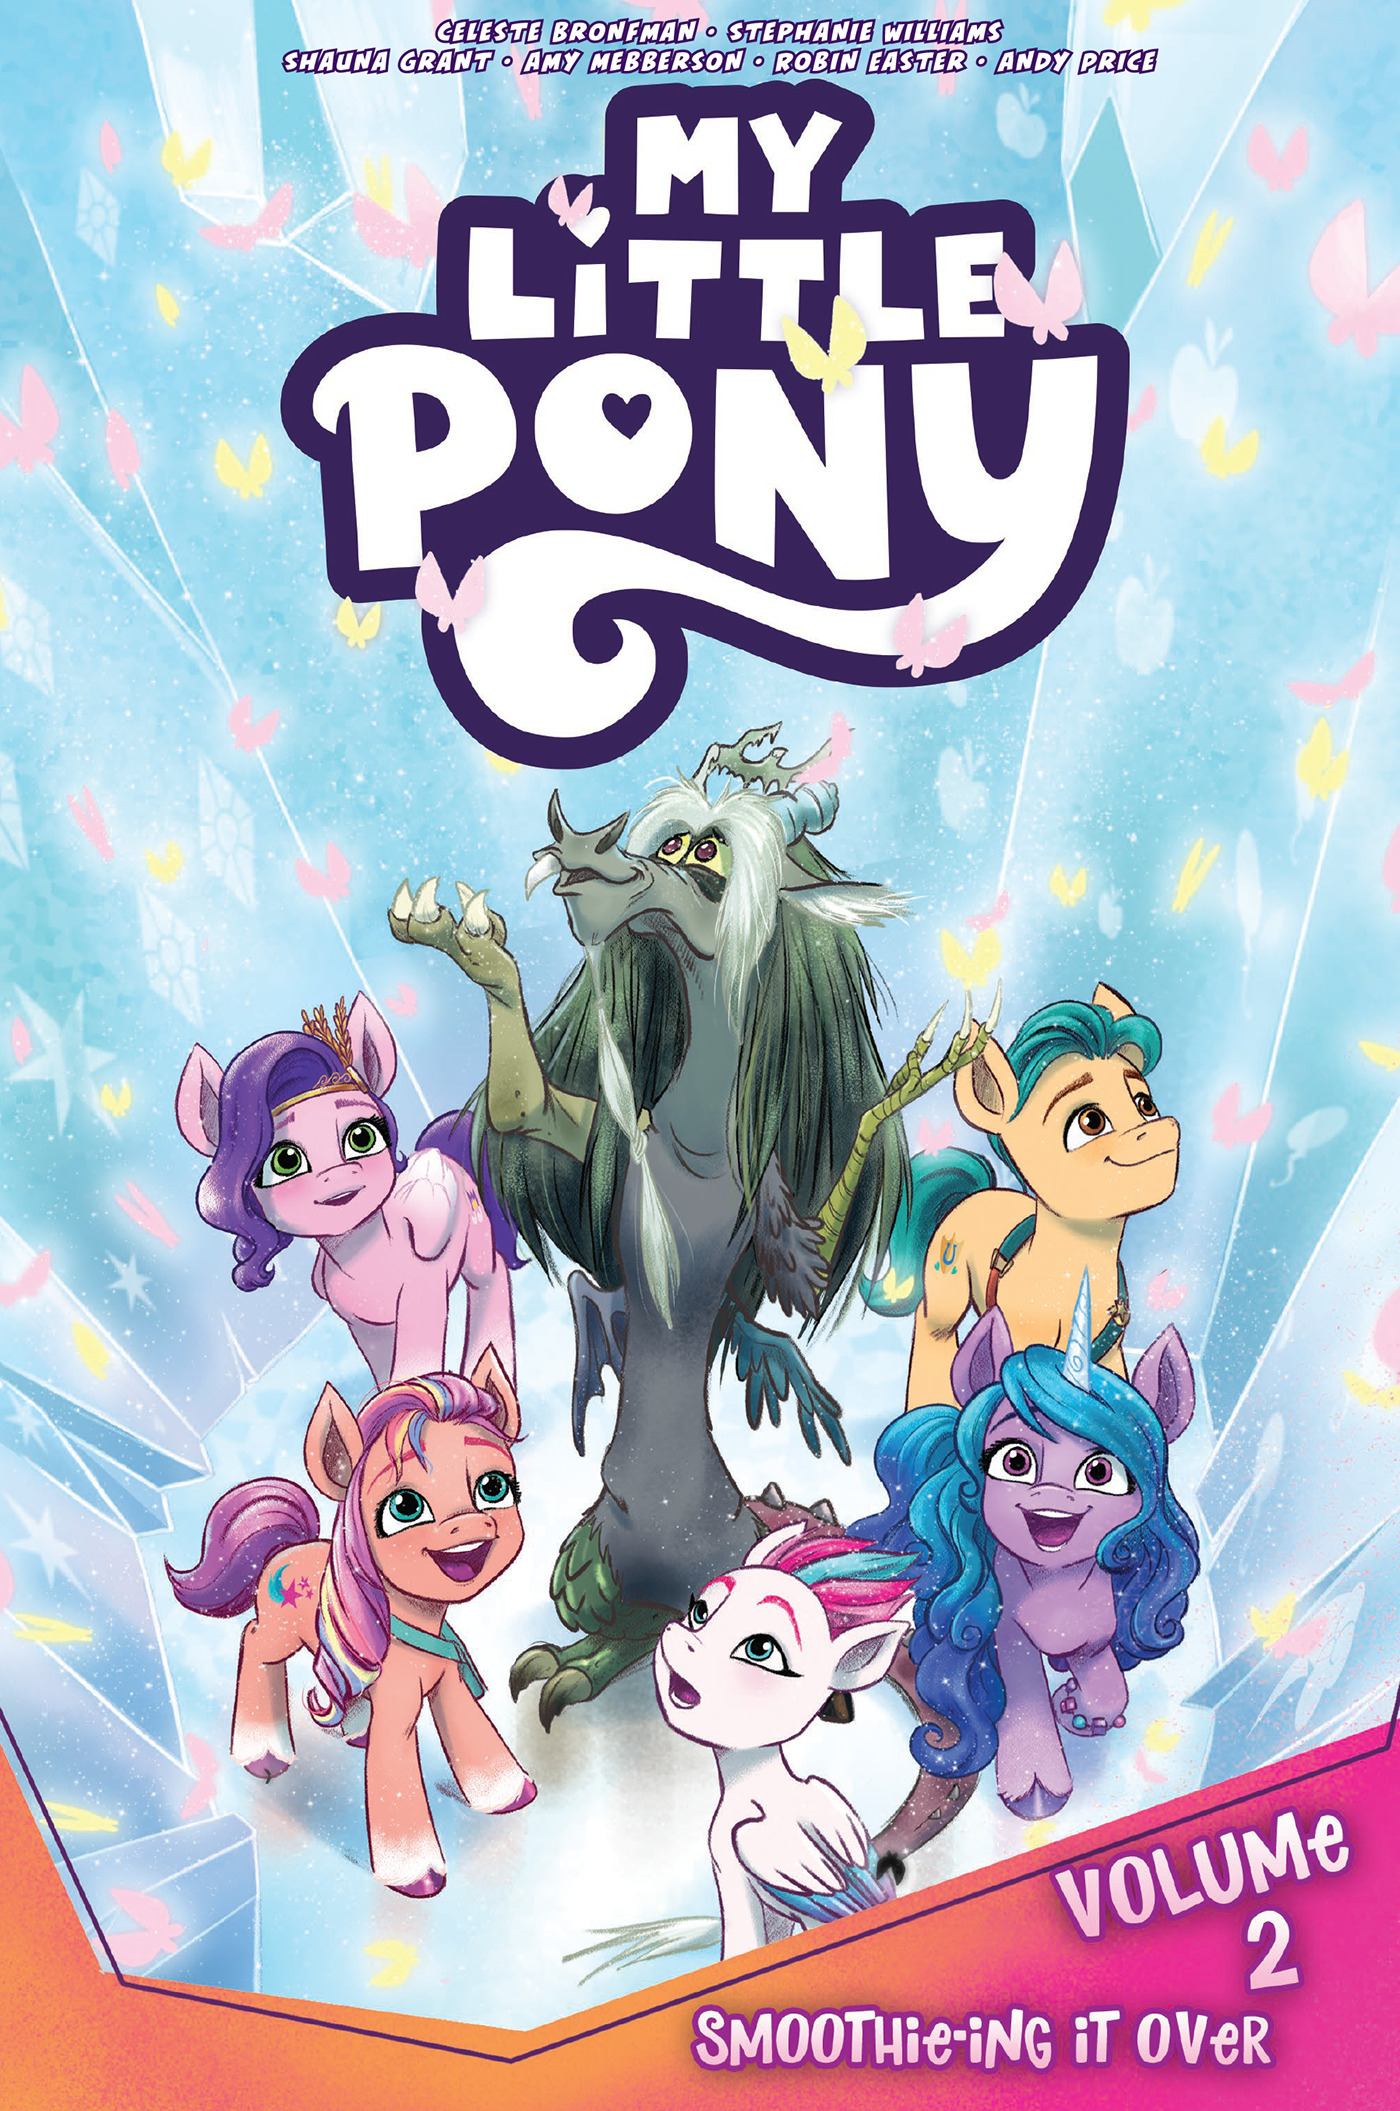 My Little Pony, Vol. 2: Smoothie-ing It Over | Bronfman, Celeste (Auteur) | Mebberson, Amy (Illustrateur) | Easter, Robin (Illustrateur) | Price, Andy (Illustrateur)